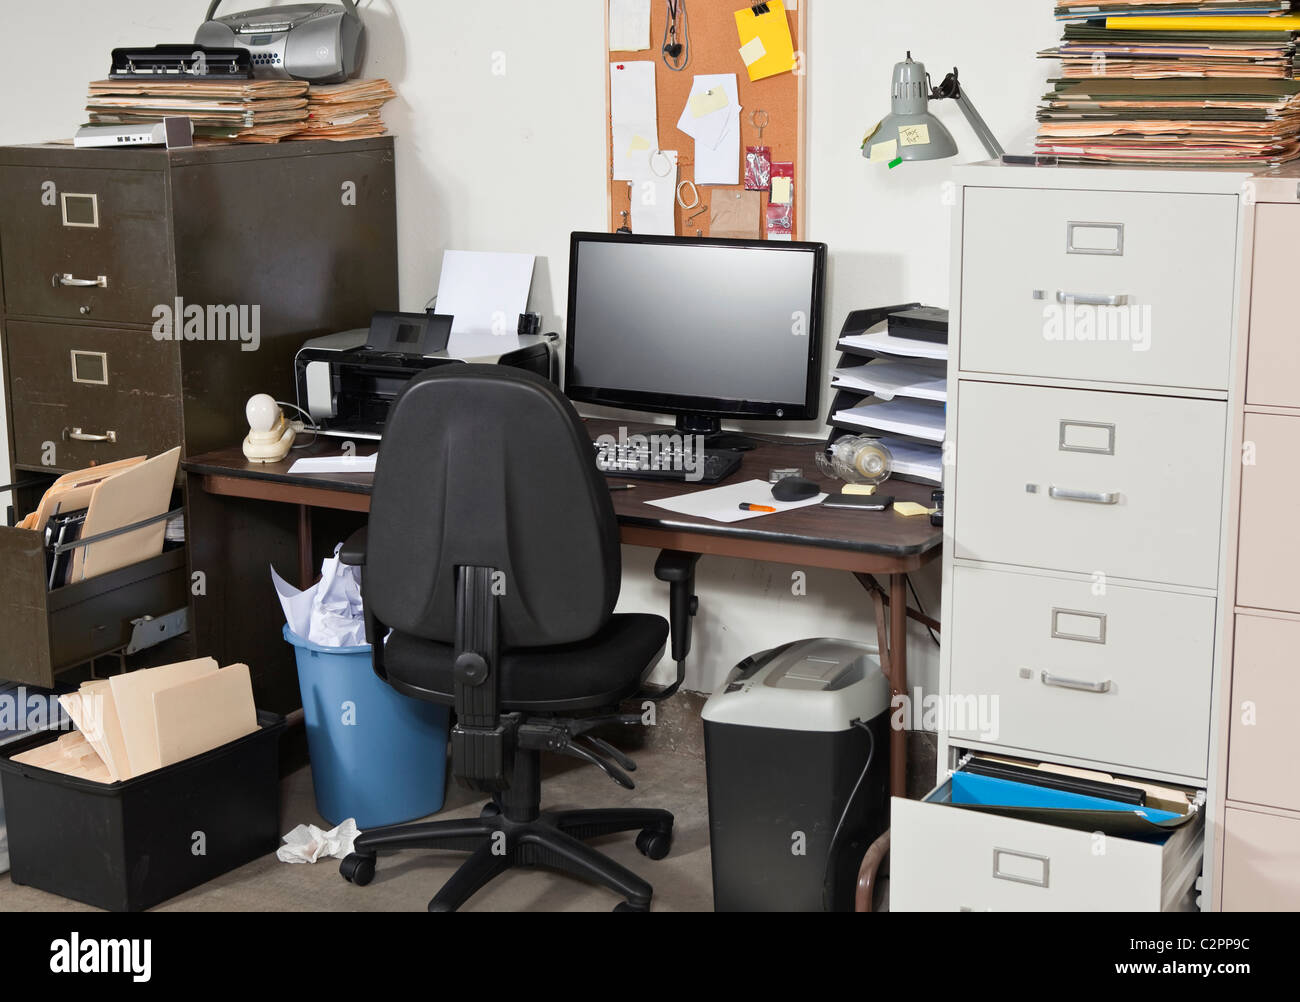 Espacio de trabajo desordenado, con montones de archivos. Foto de stock